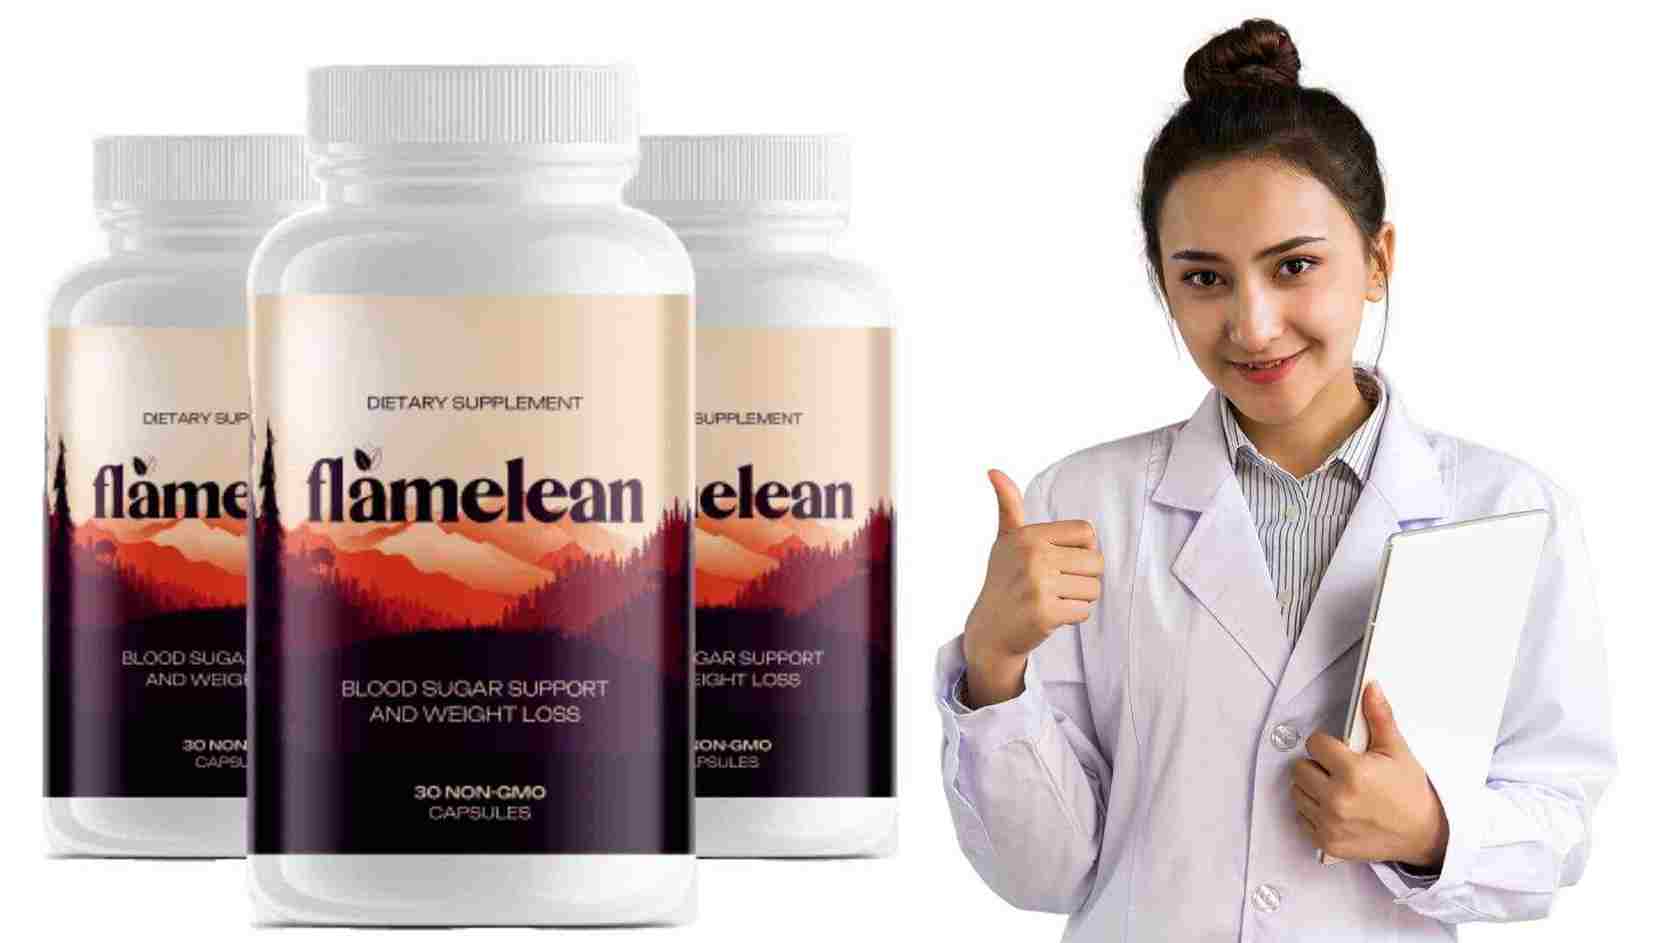 flamelean dietary supplement